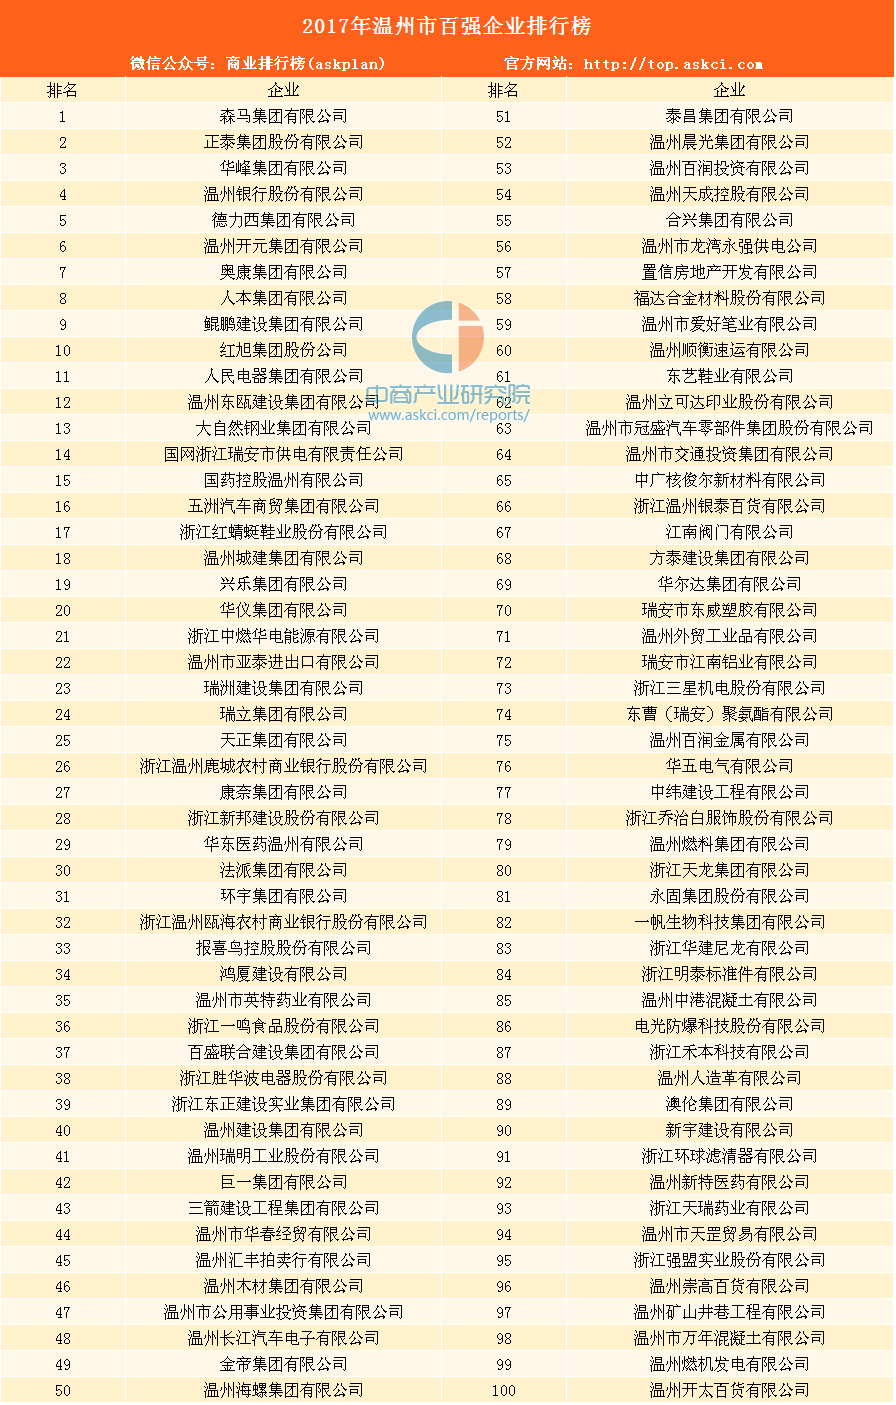 2017年温州企业百强排行榜